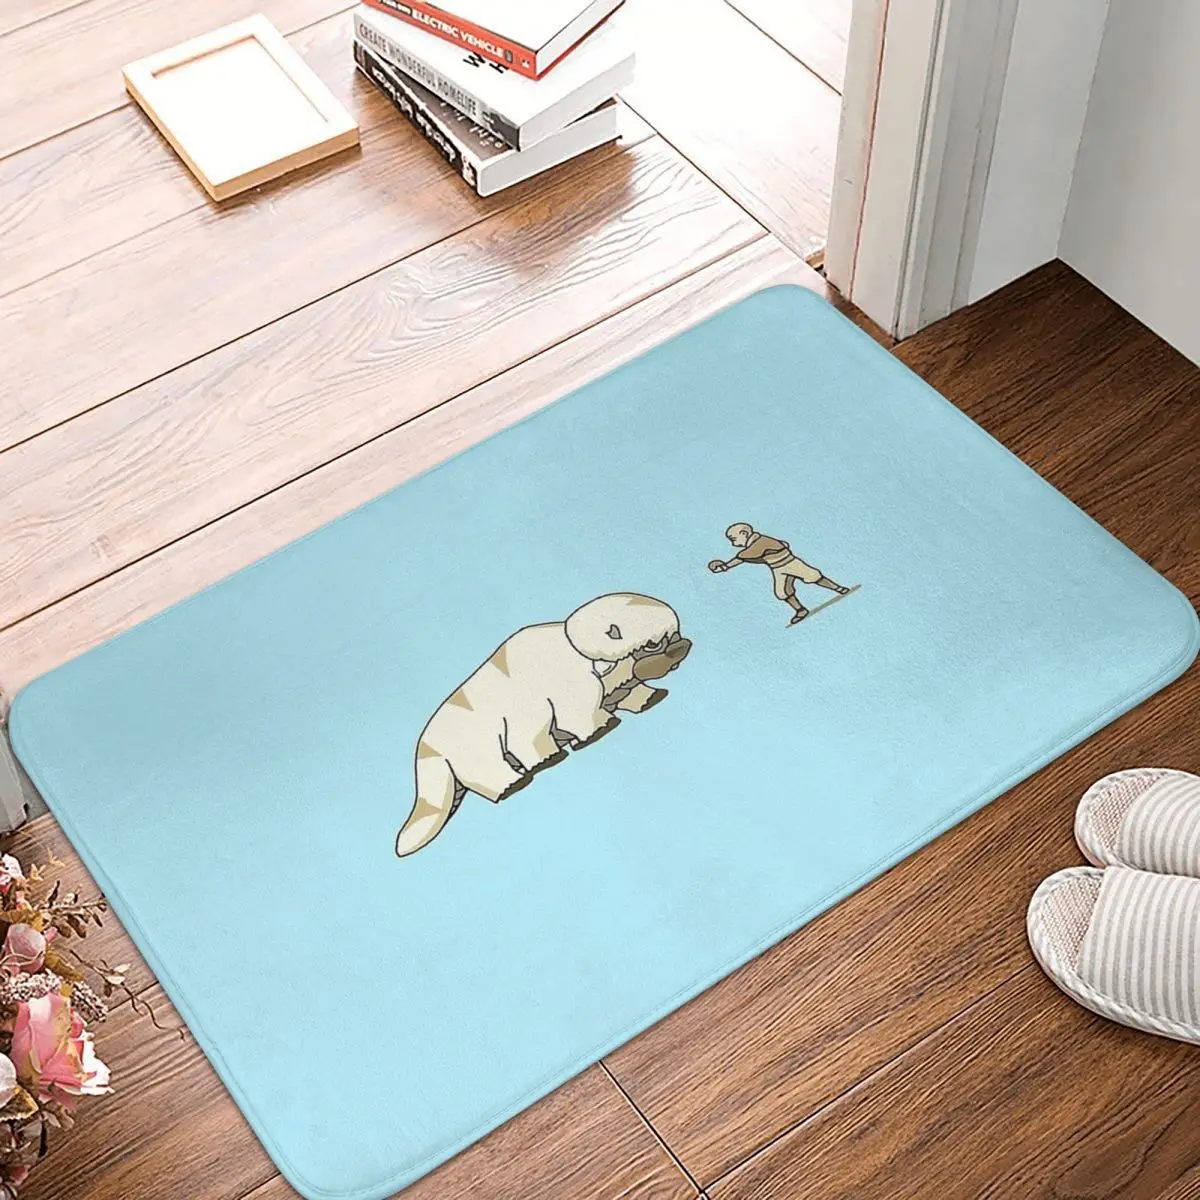 Baby Appa Aang Bath Non Slip Carpet Avatar The Last Airbender Bedroom Mat Welcome Doormat Floor - Avatar The Last Airbender Store